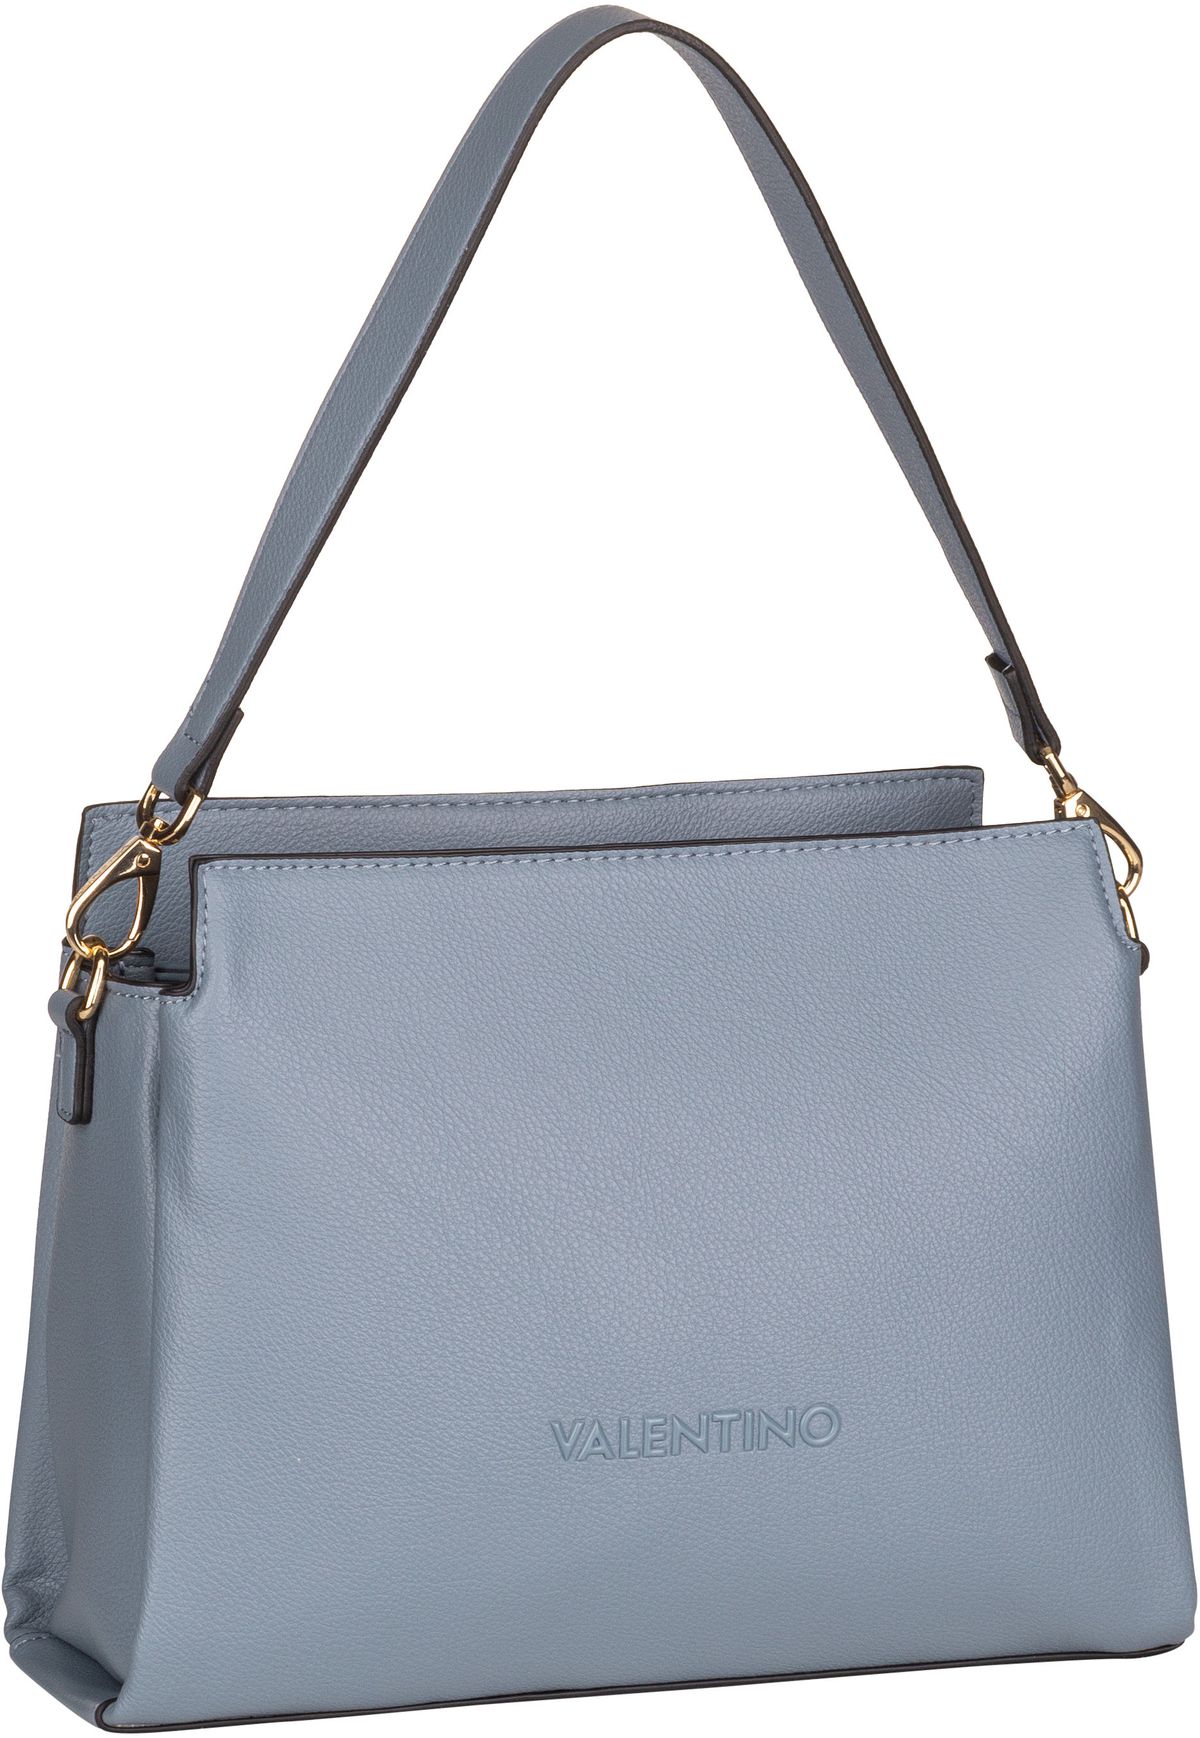 Valentino Manhattan RE W06  in Blau (8.4 Liter), Handtasche